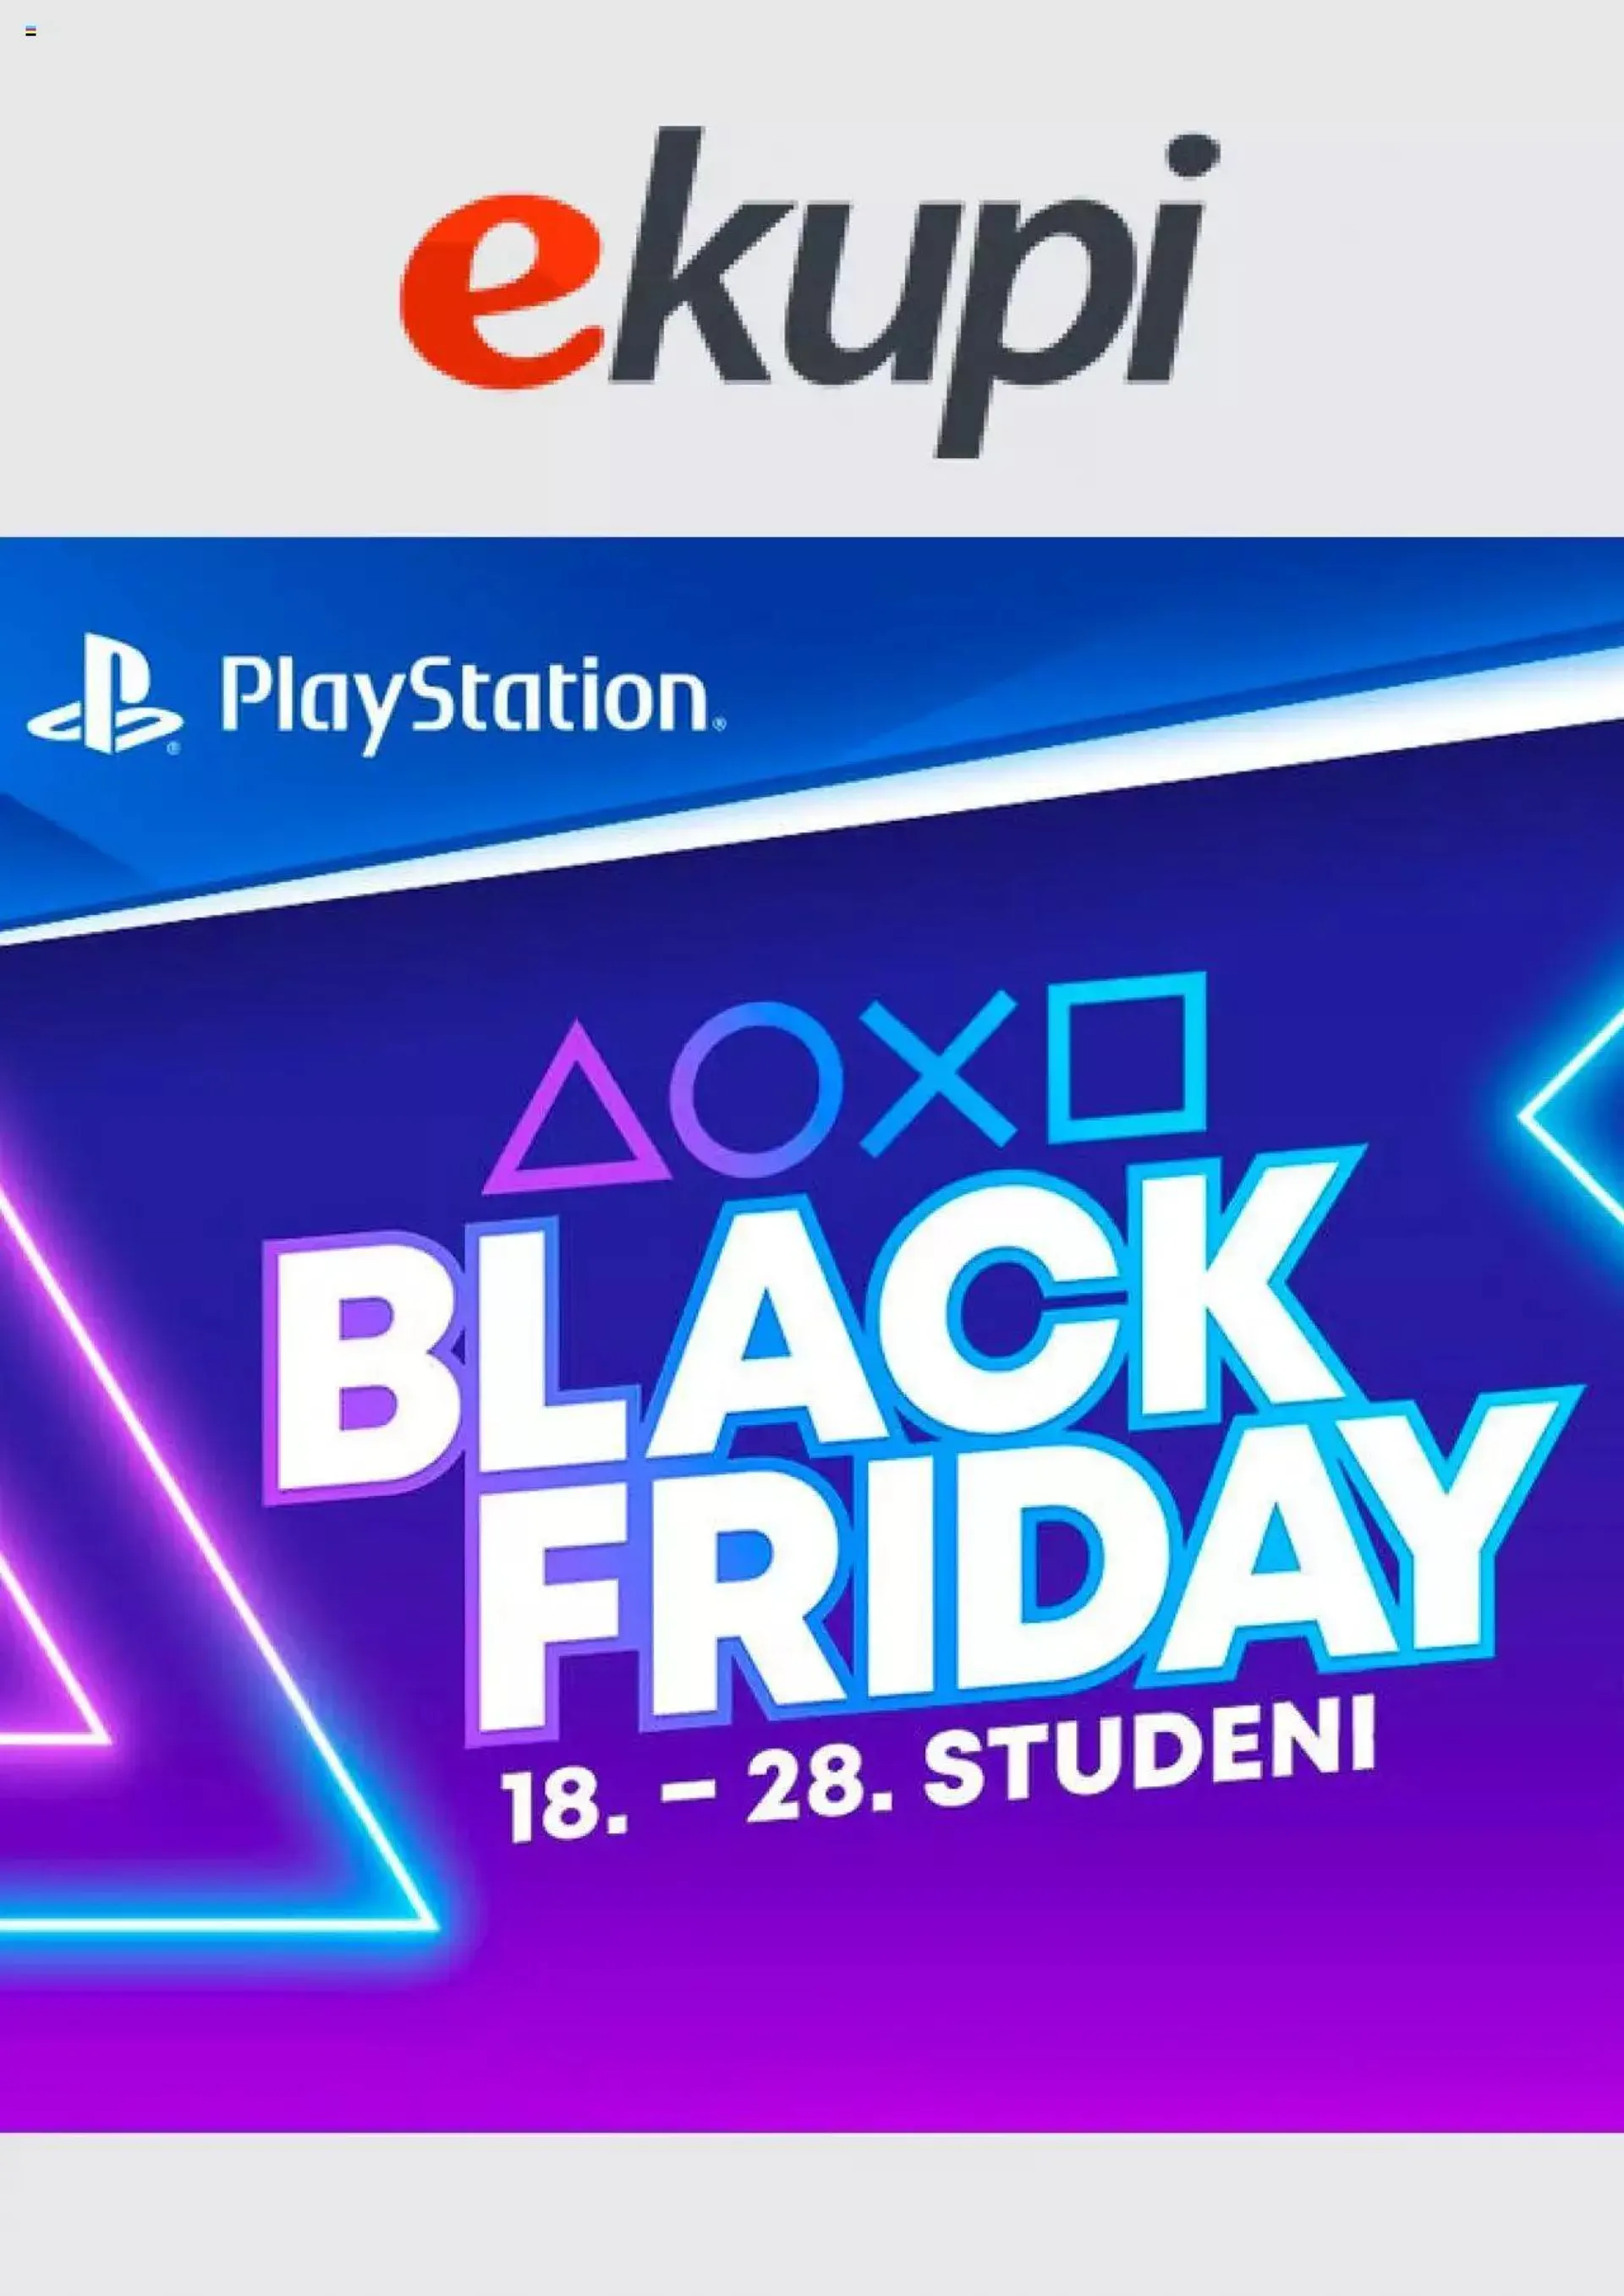 eKupi - Black Friday - Playstation - 0